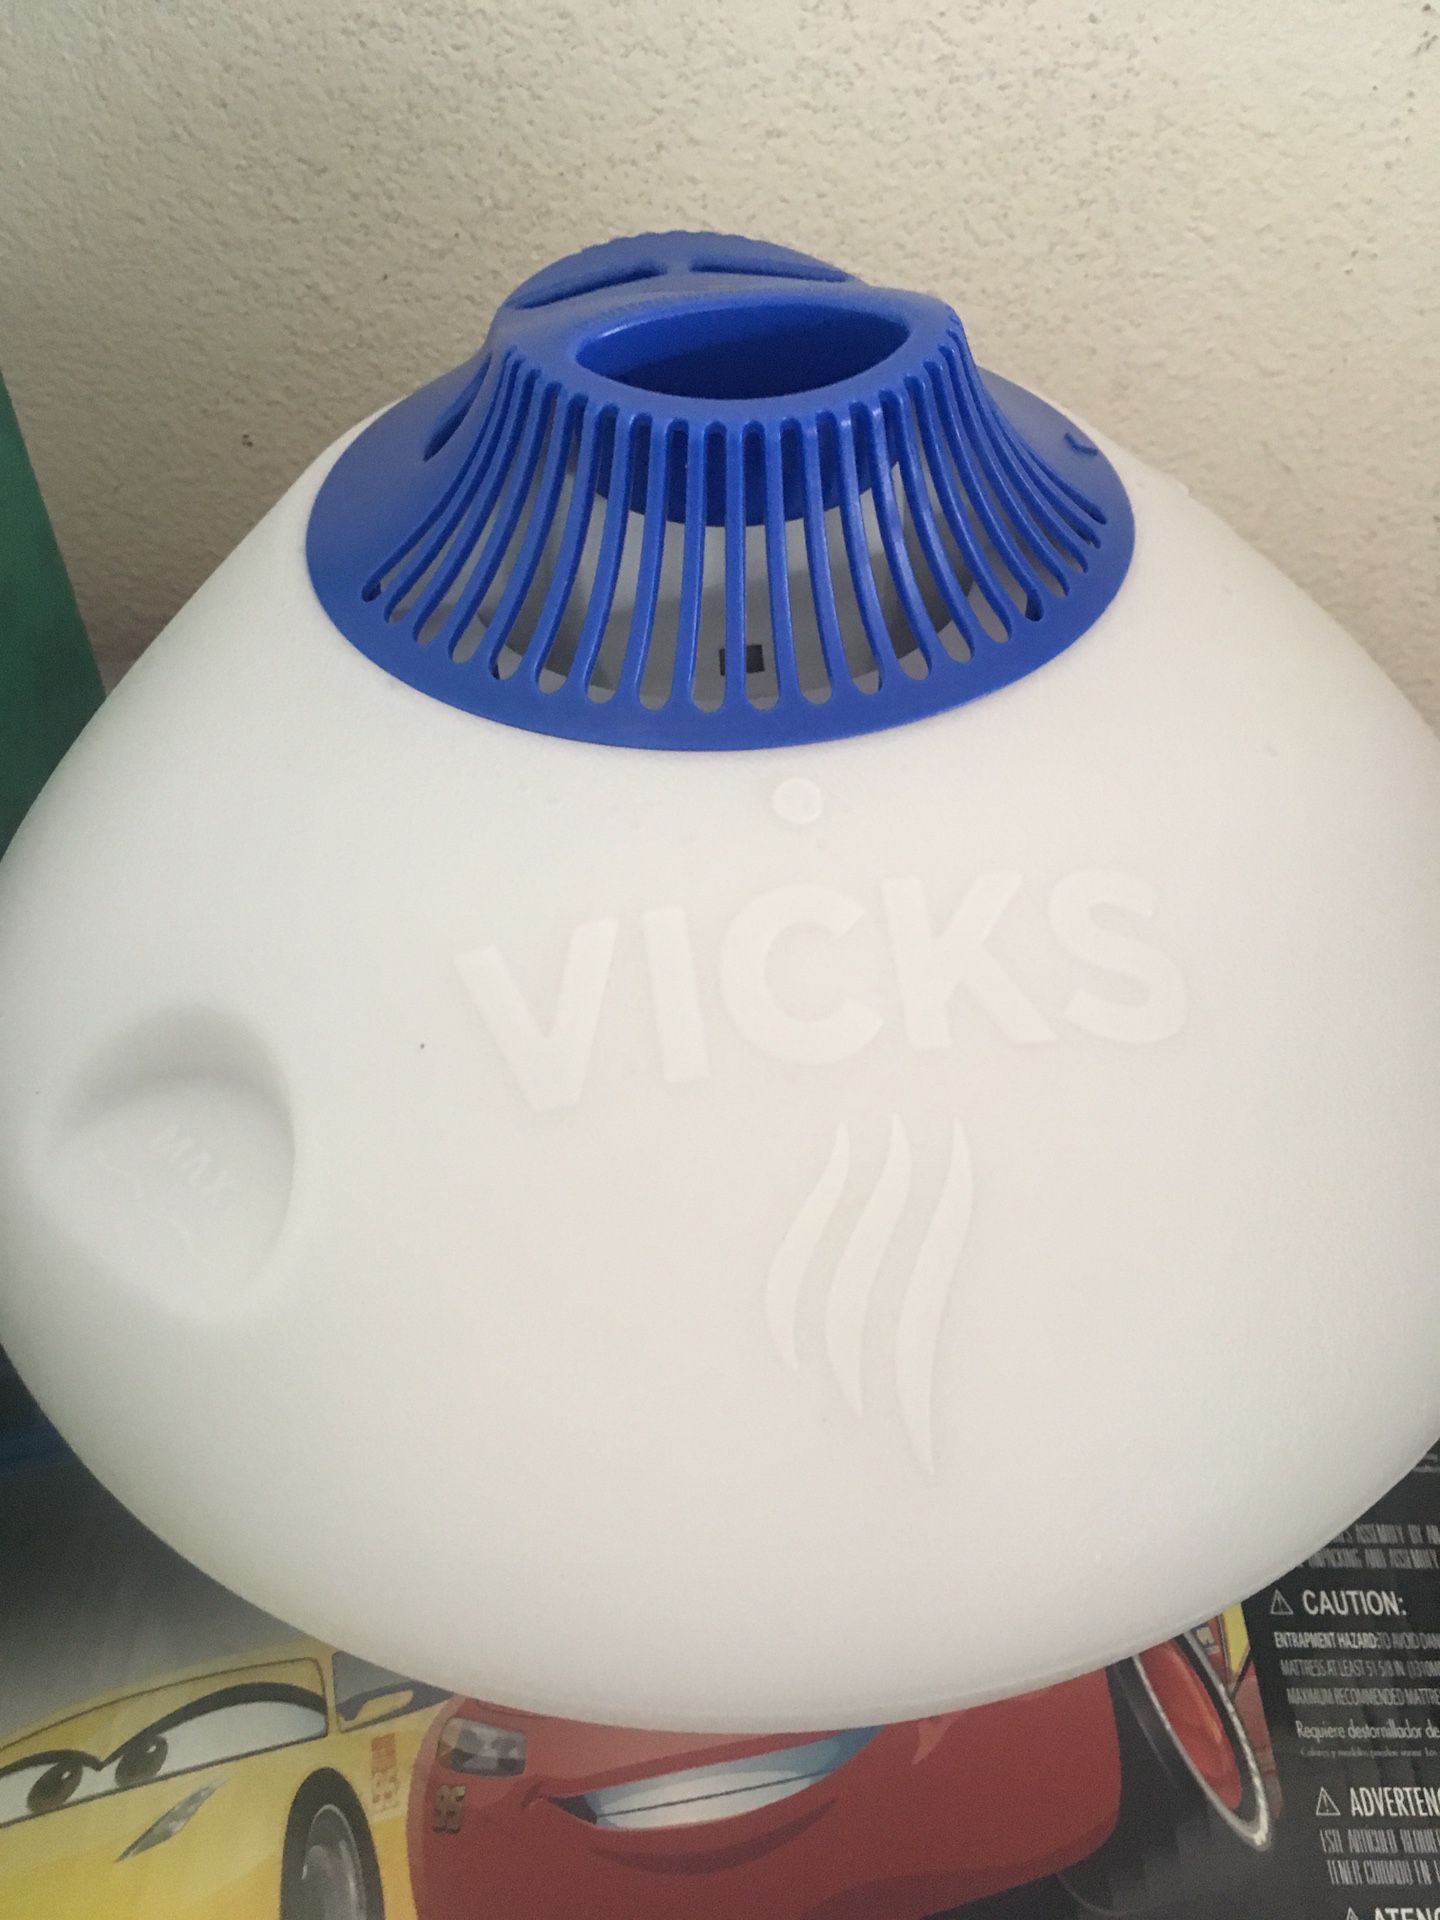 Vick’s humidifier